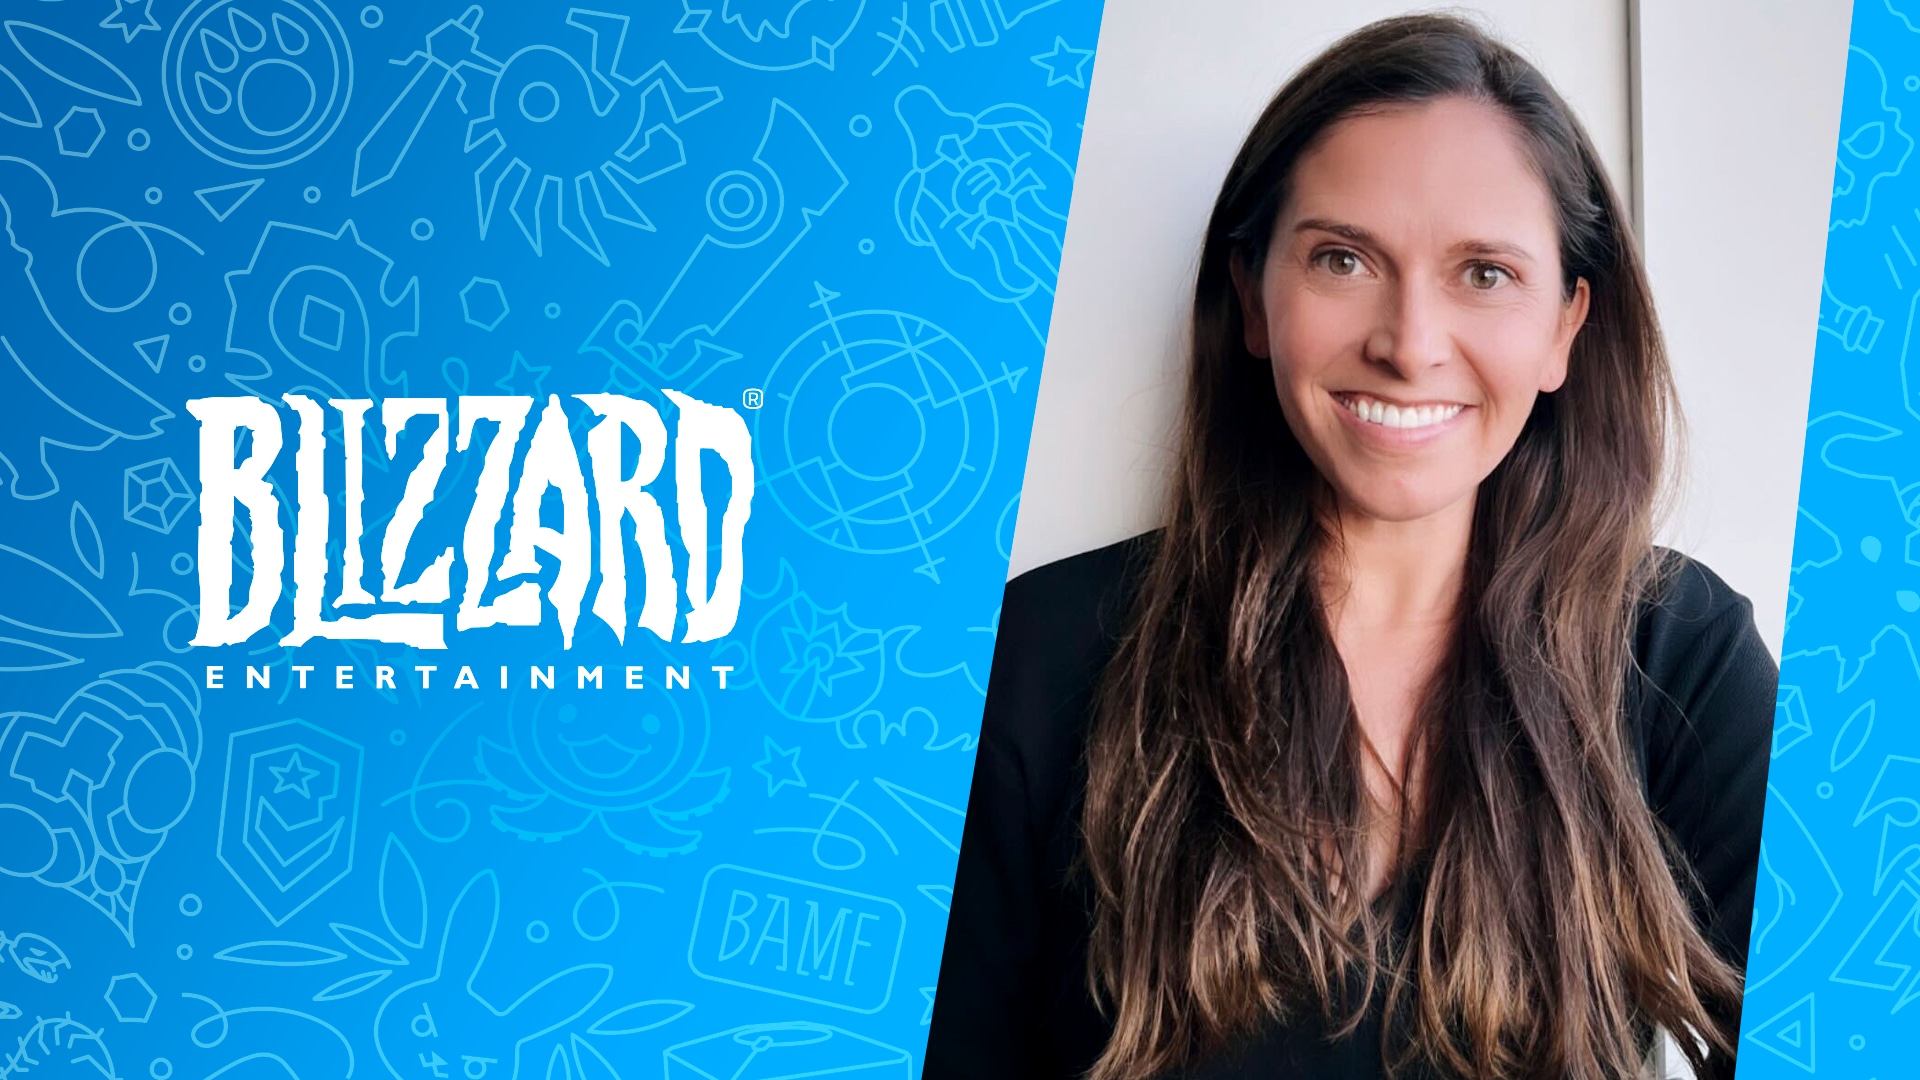 Jessica Martinez dołącza do Blizzard Entertainment jako wiceprezeska ds. kultury